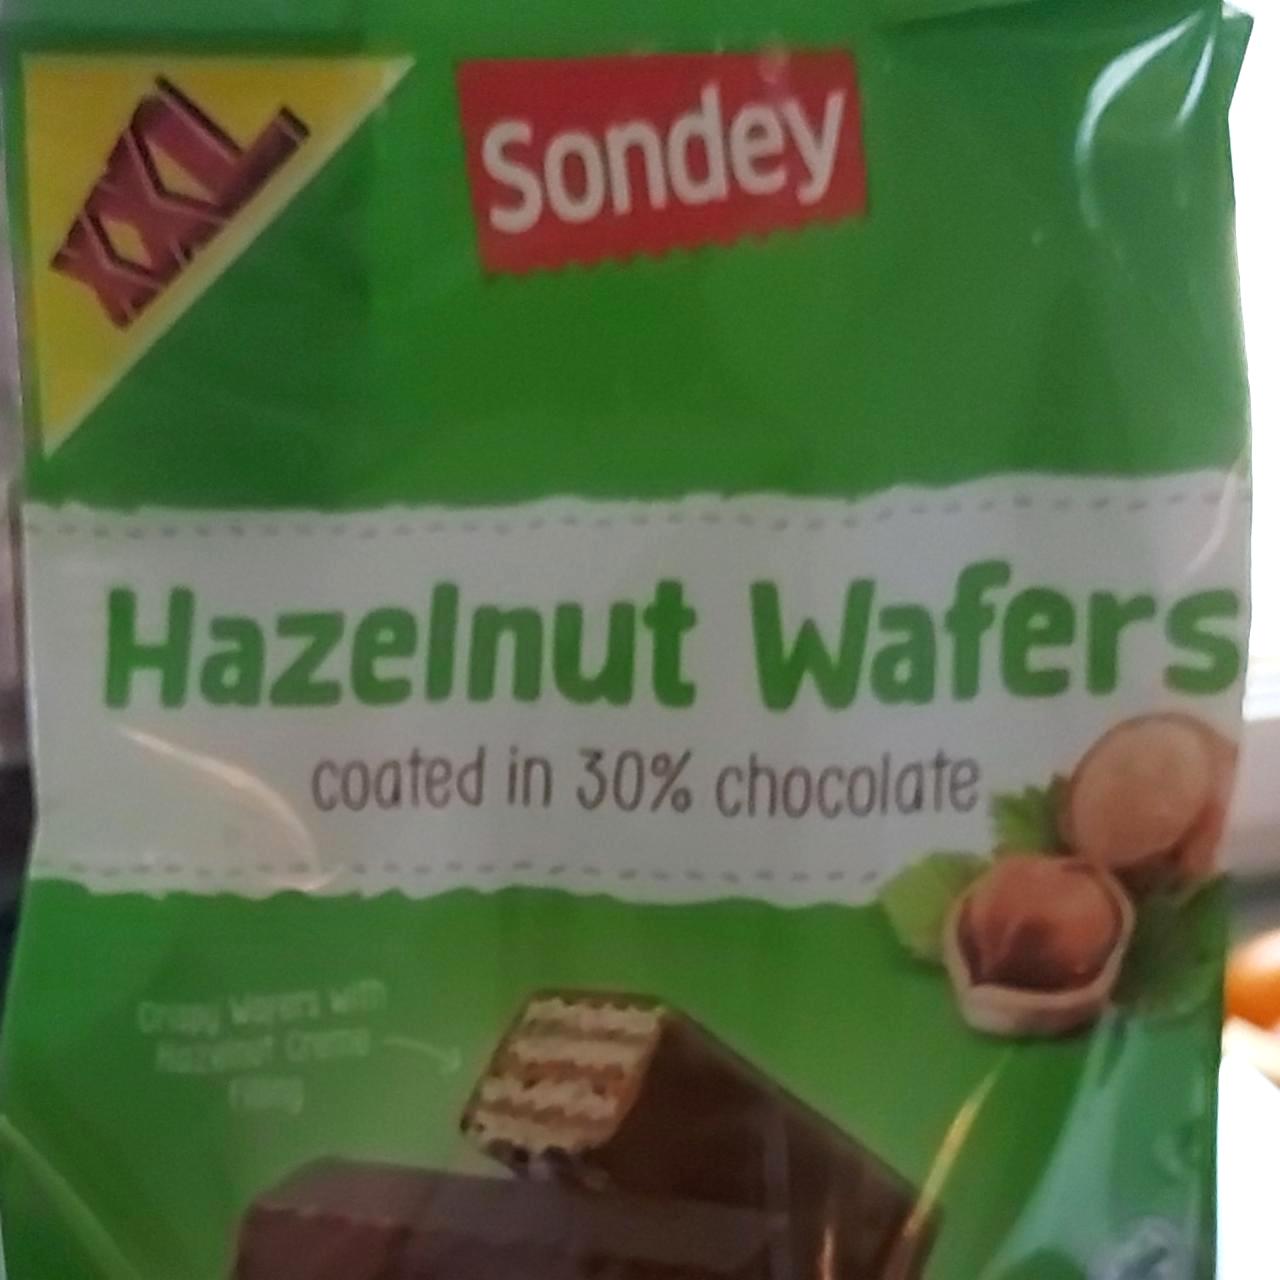 Képek - Hazelnut wafers Sondey